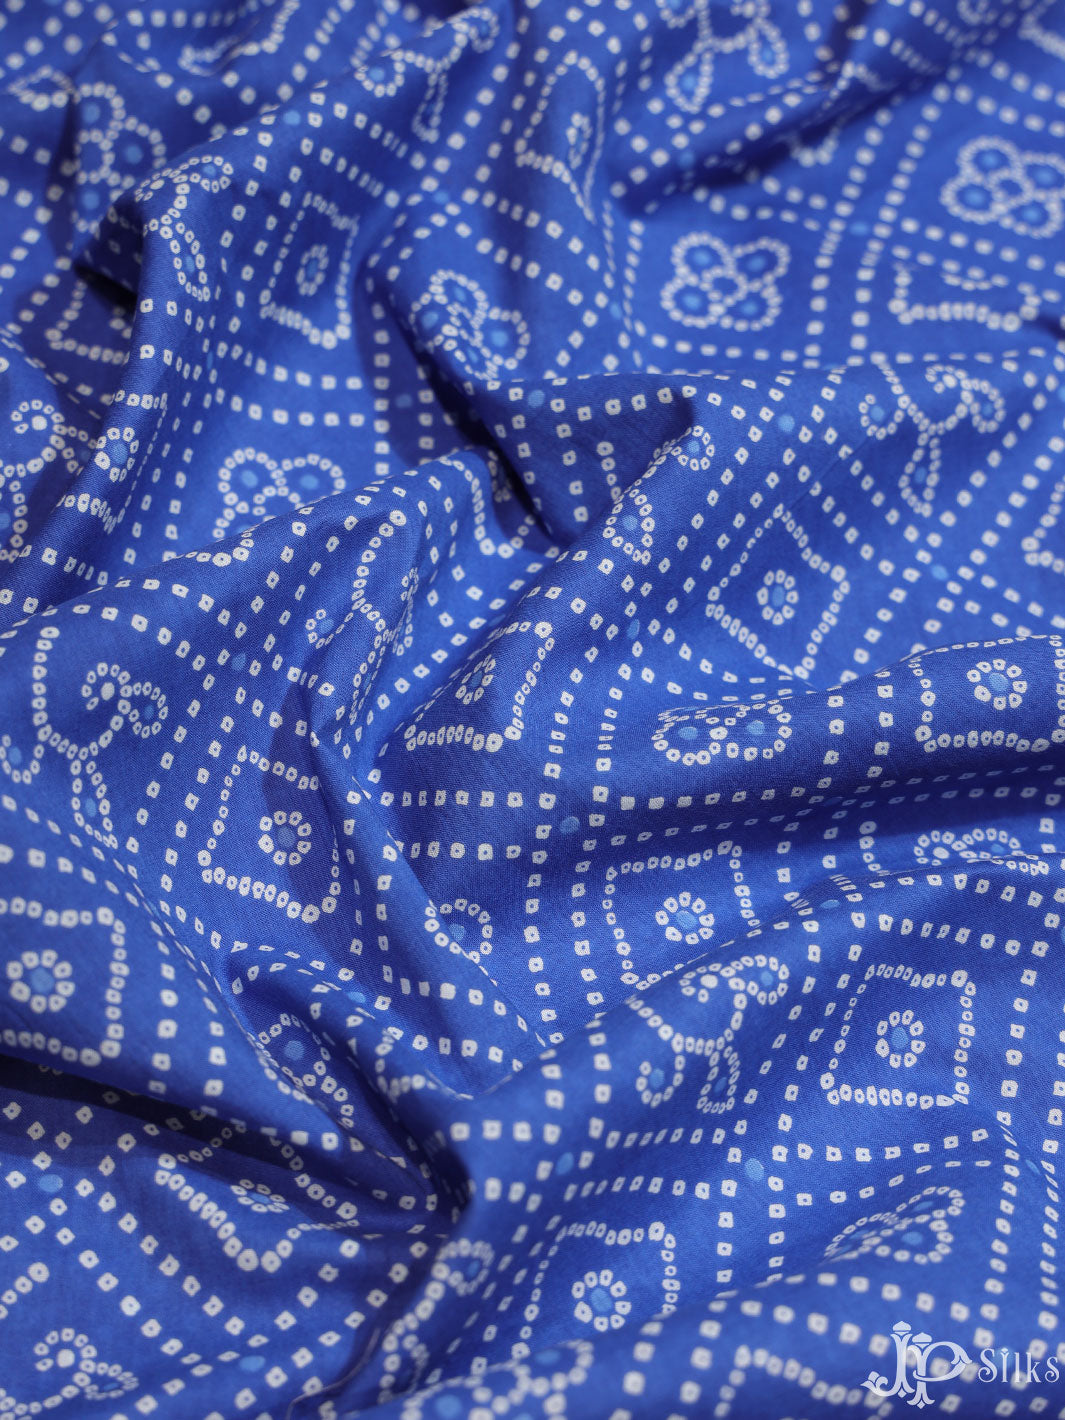 Dark cobalt blue Cotton Fabric - A5947